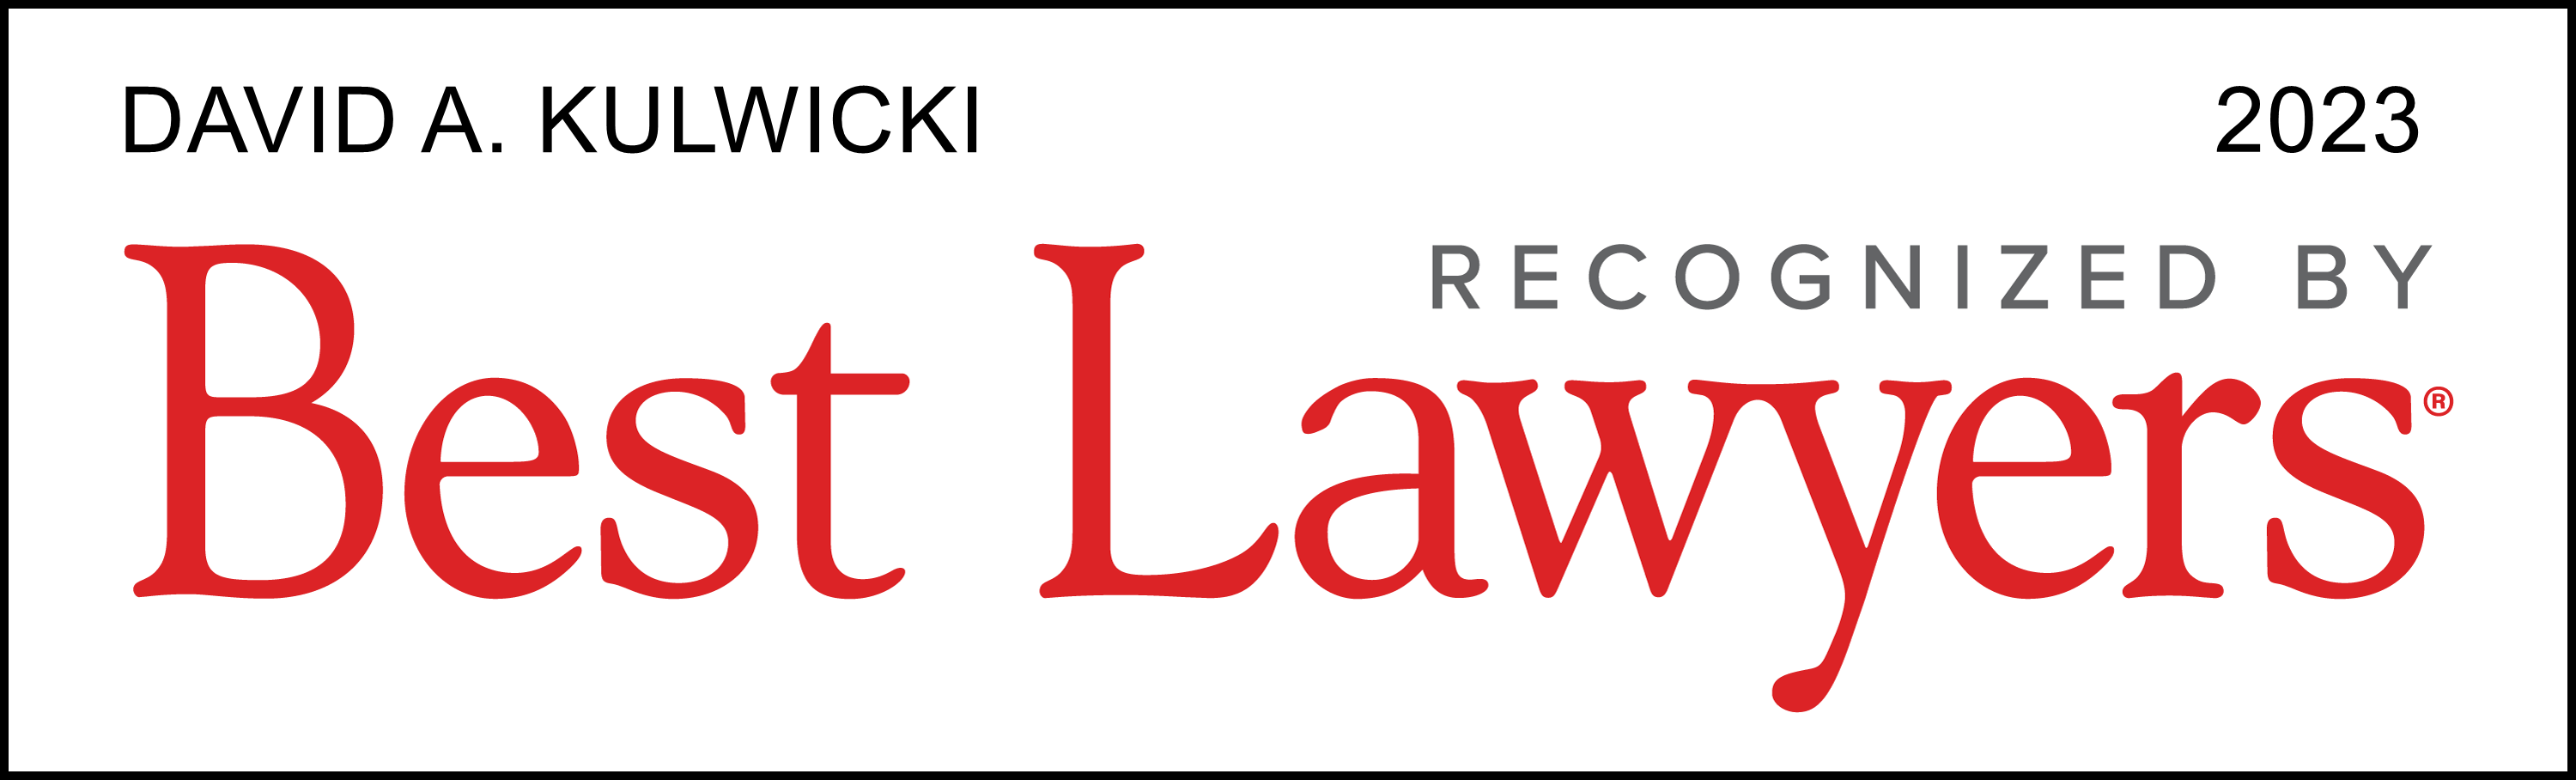 David A. Kulwicki | Best Lawyers 2023